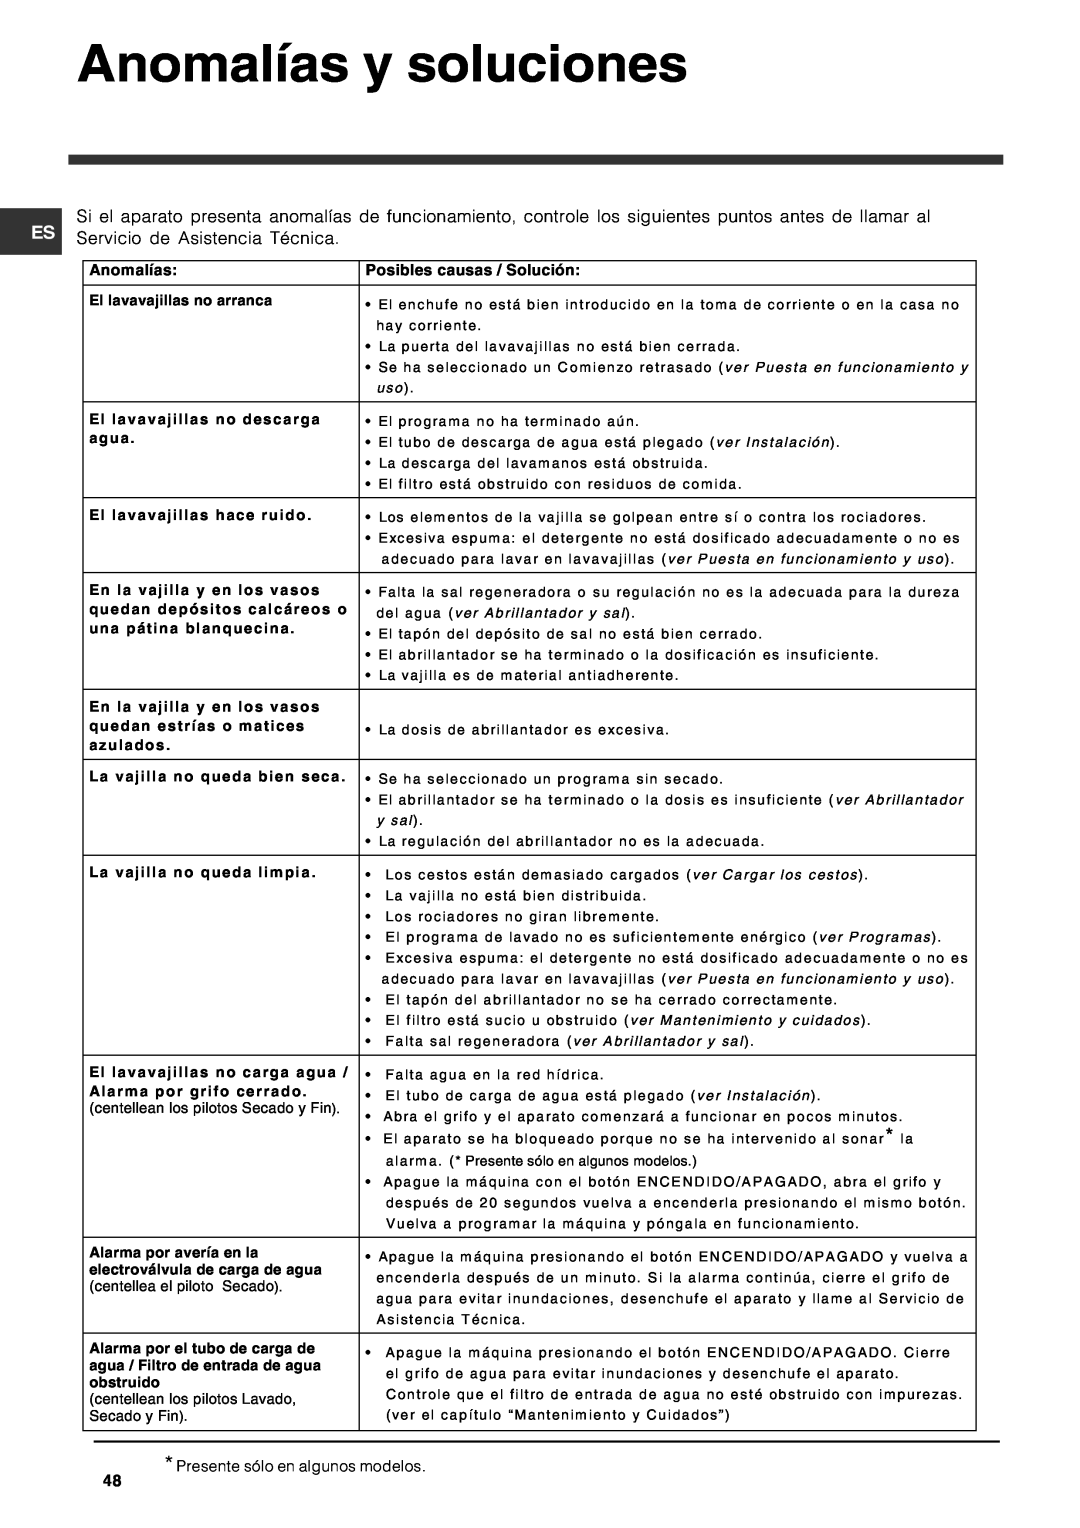 Indesit DFG 262 operating instructions Anomalías y soluciones, Posibles causas / Solución 